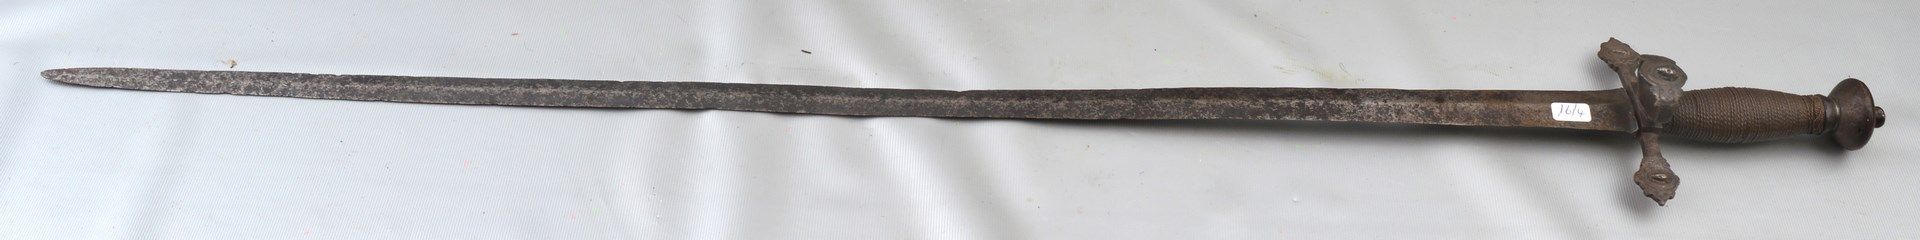 Degen Eisen, Griff mit Kupfer umwickelt, mit figürlichen Darstellungen verziert, L 88 cm, 18. Jh.